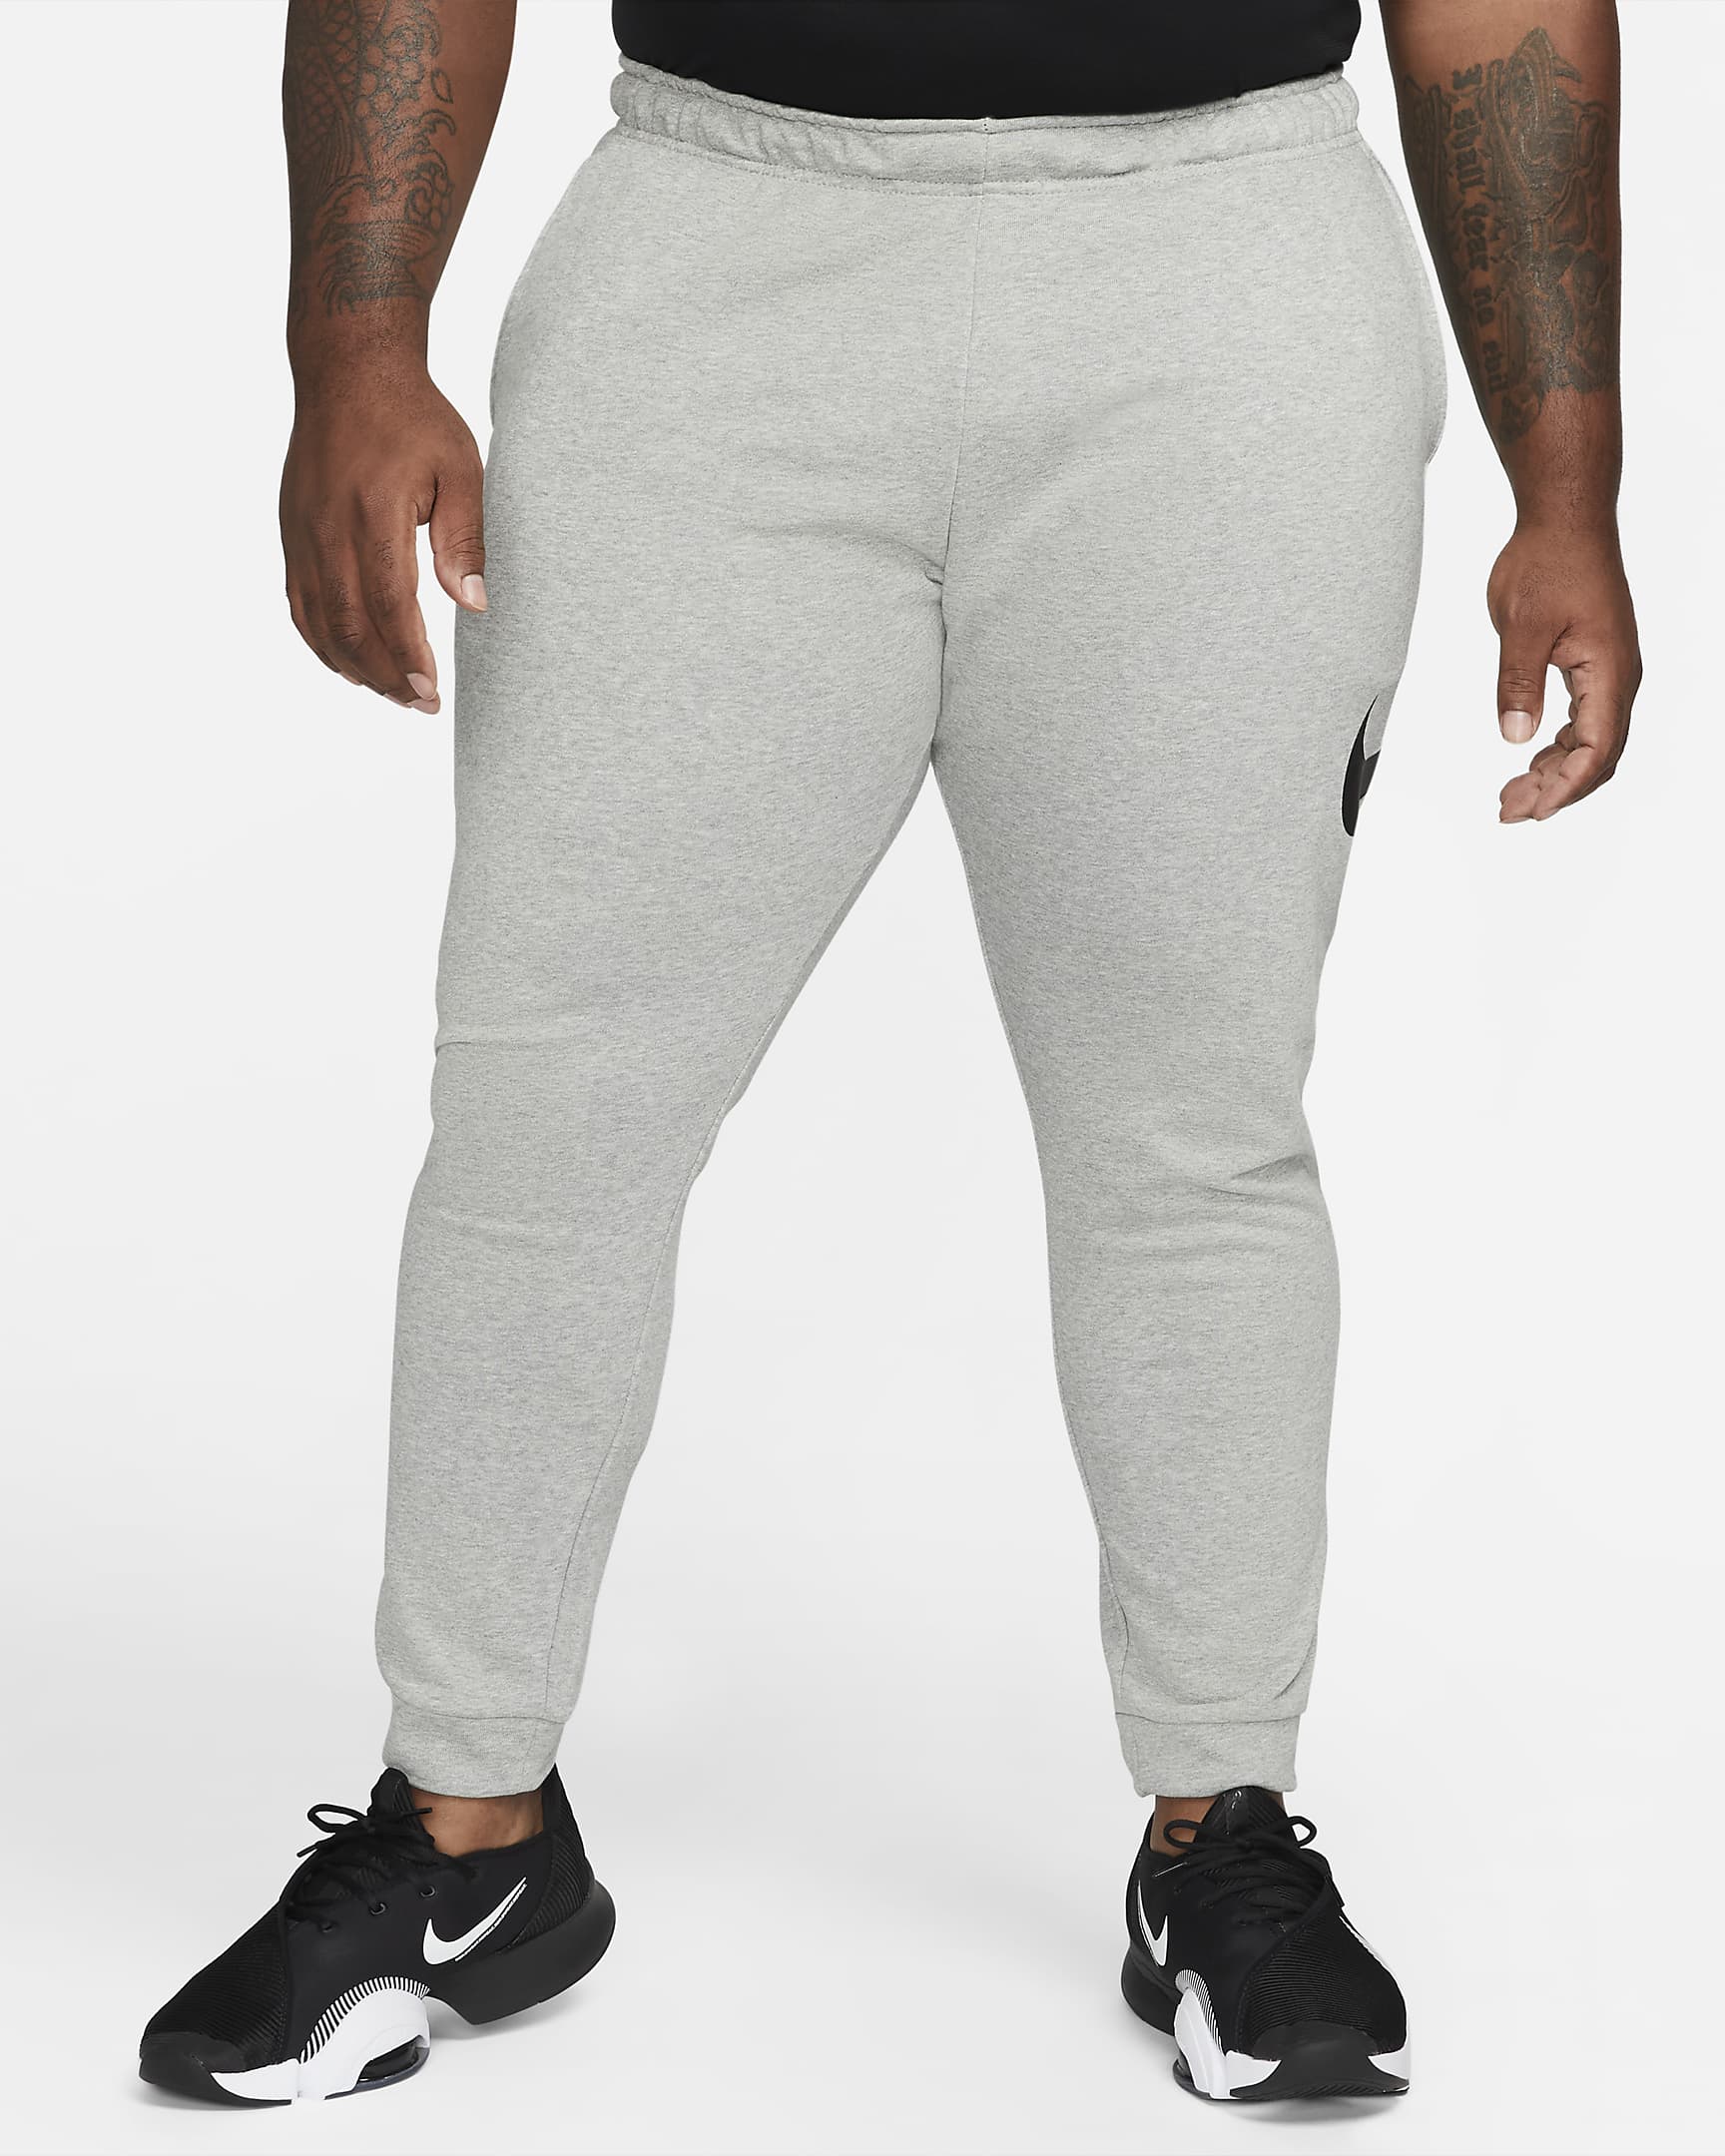 Pants de fitness Dri-FIT entallados para hombre Nike Dry Graphic. Nike.com